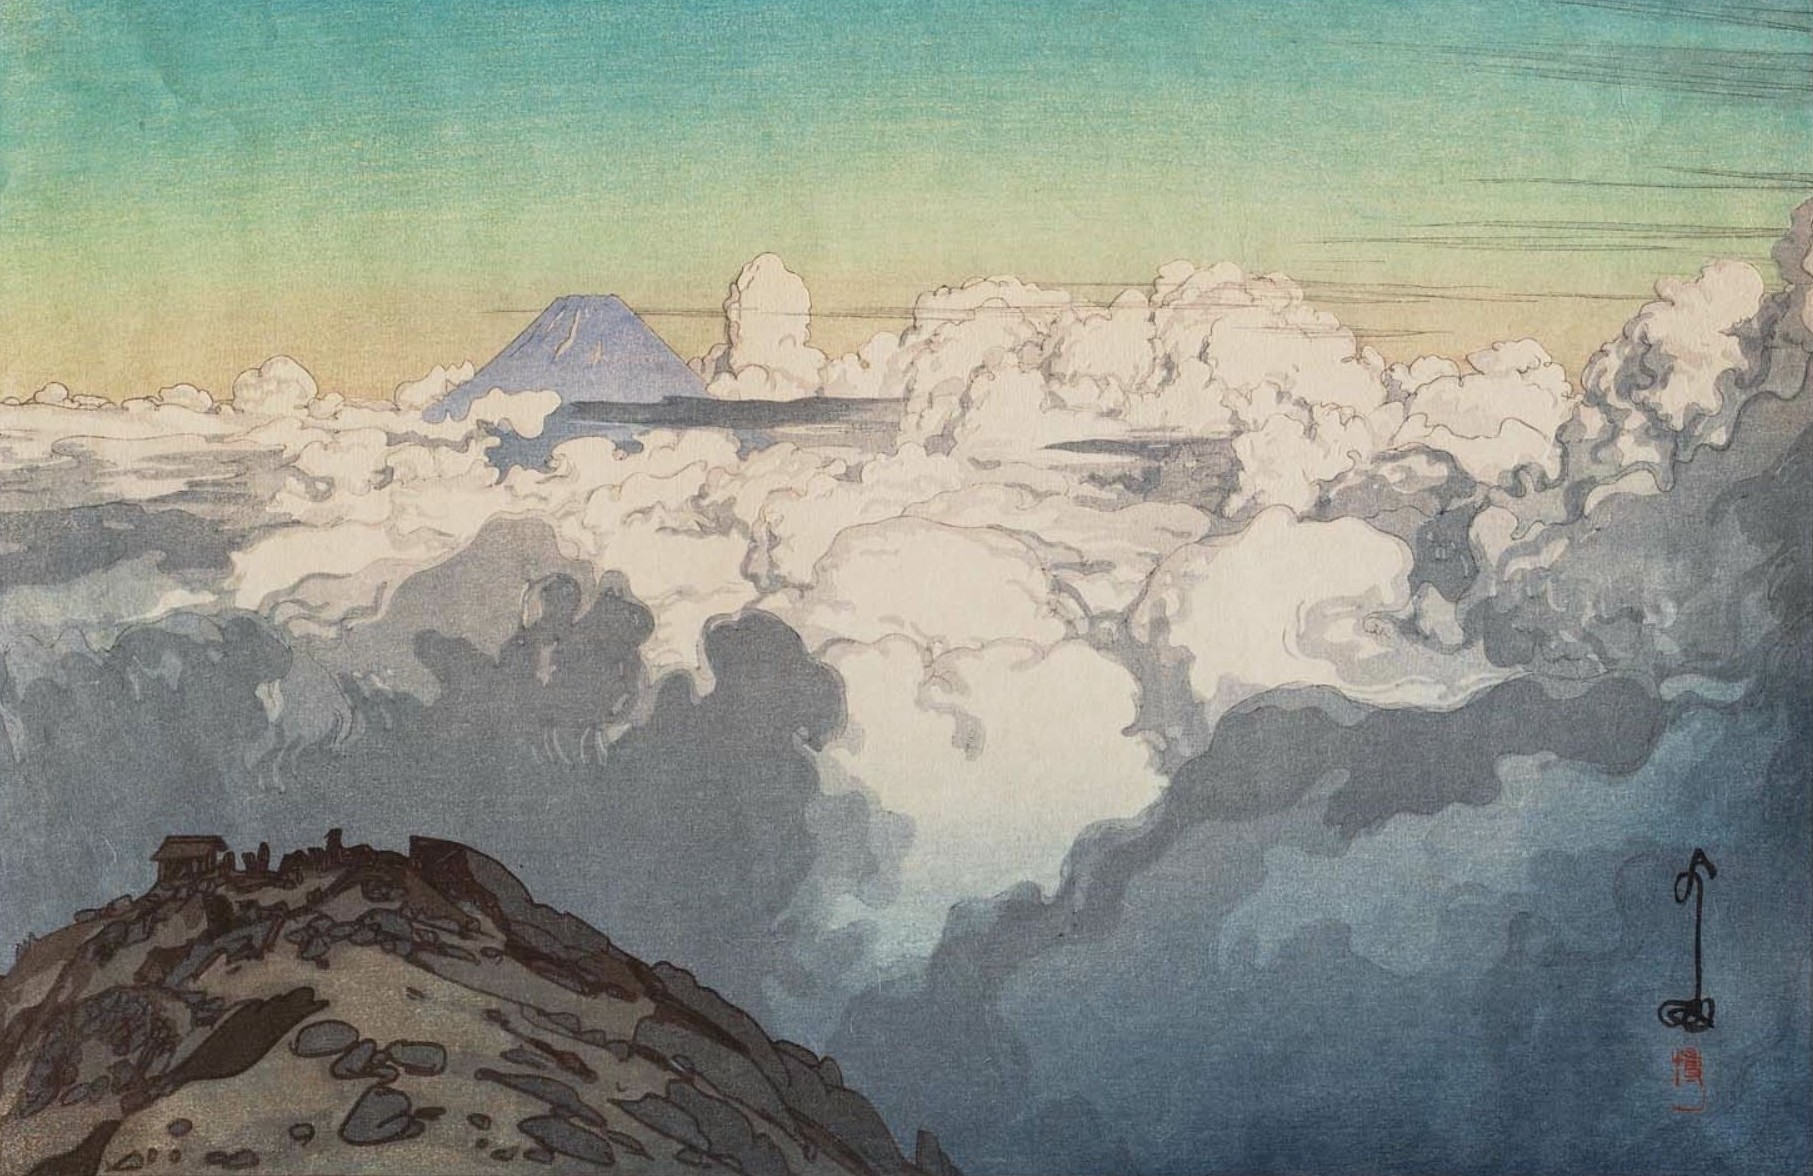 Yoshida Hiroshi, Japanese, Artwork, Painting, Mountains, Clouds Wallpaper